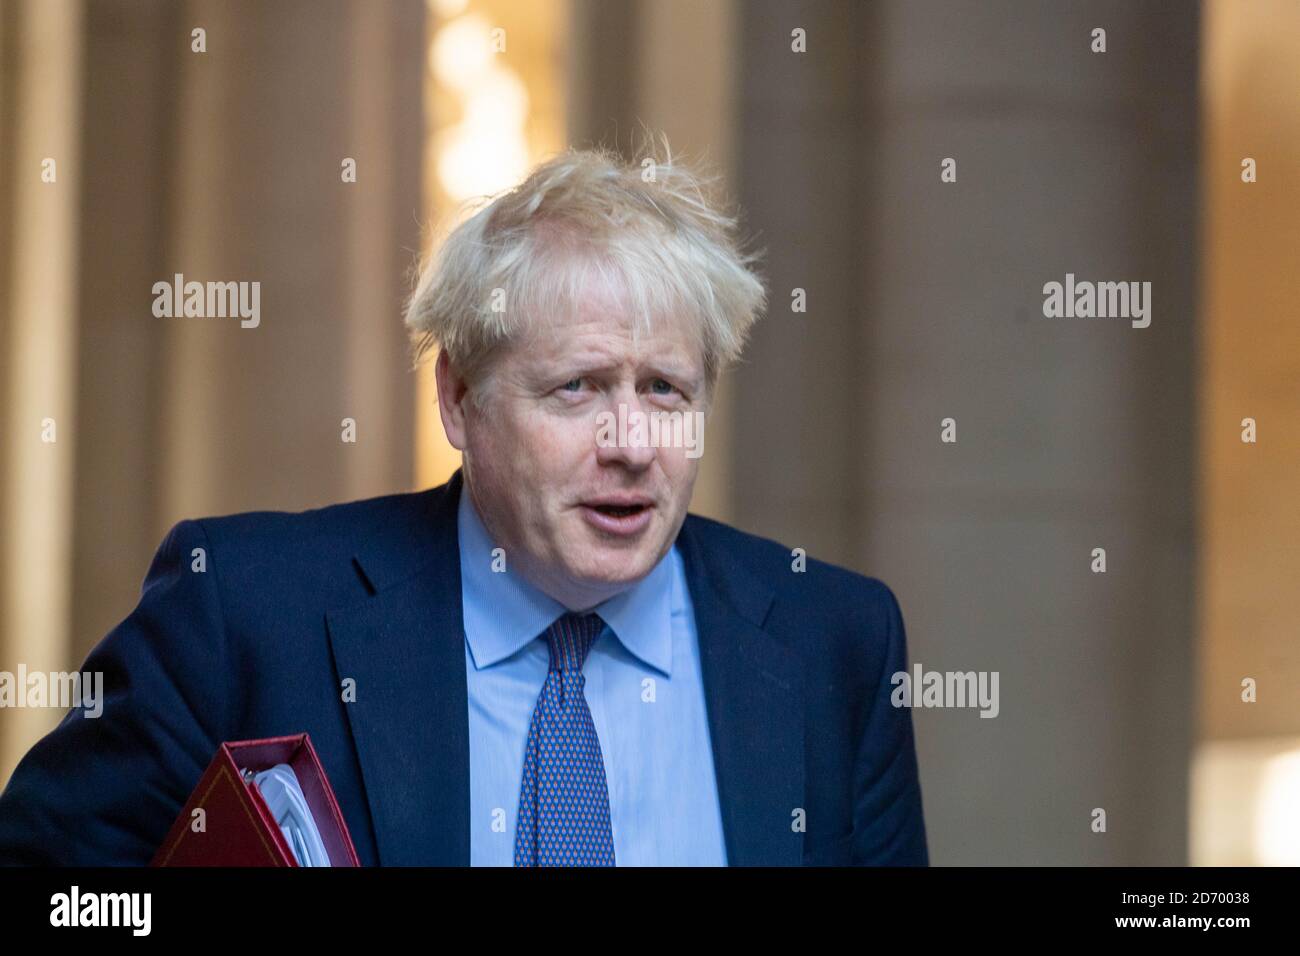 Londres, Reino Unido. 20 de octubre de 2020. Boris Johnson, primer Ministro del Parlamento, deja una reunión de gabinete en la Oficina de Asuntos Exteriores y del Commonwealth de Londres. Crédito: Ian Davidson/Alamy Live News Foto de stock